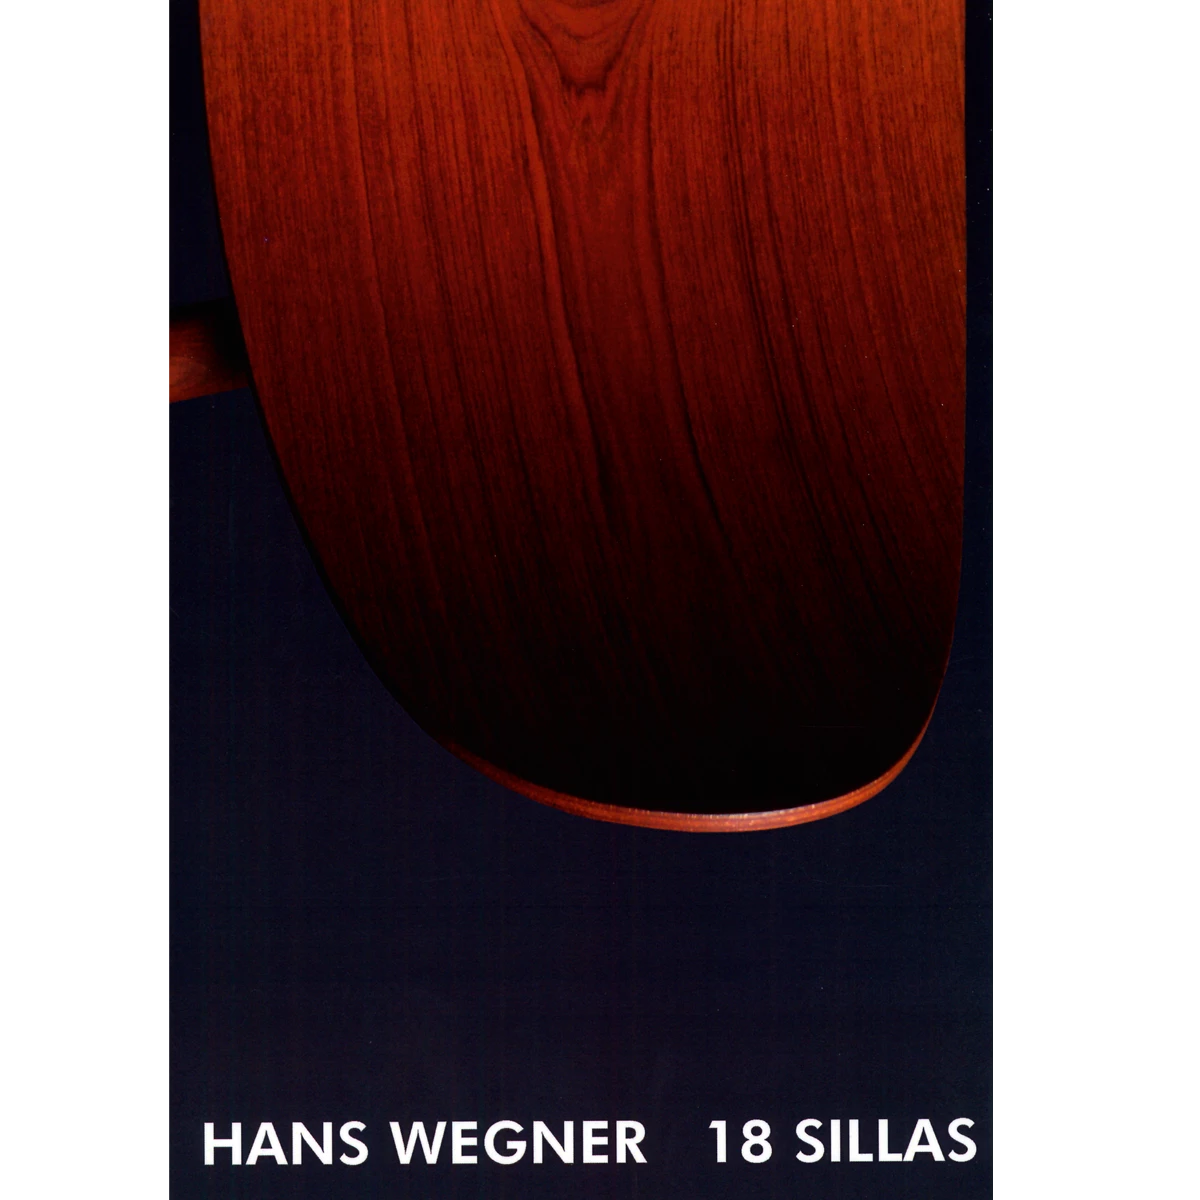 Hans Wegner: 18 sillas